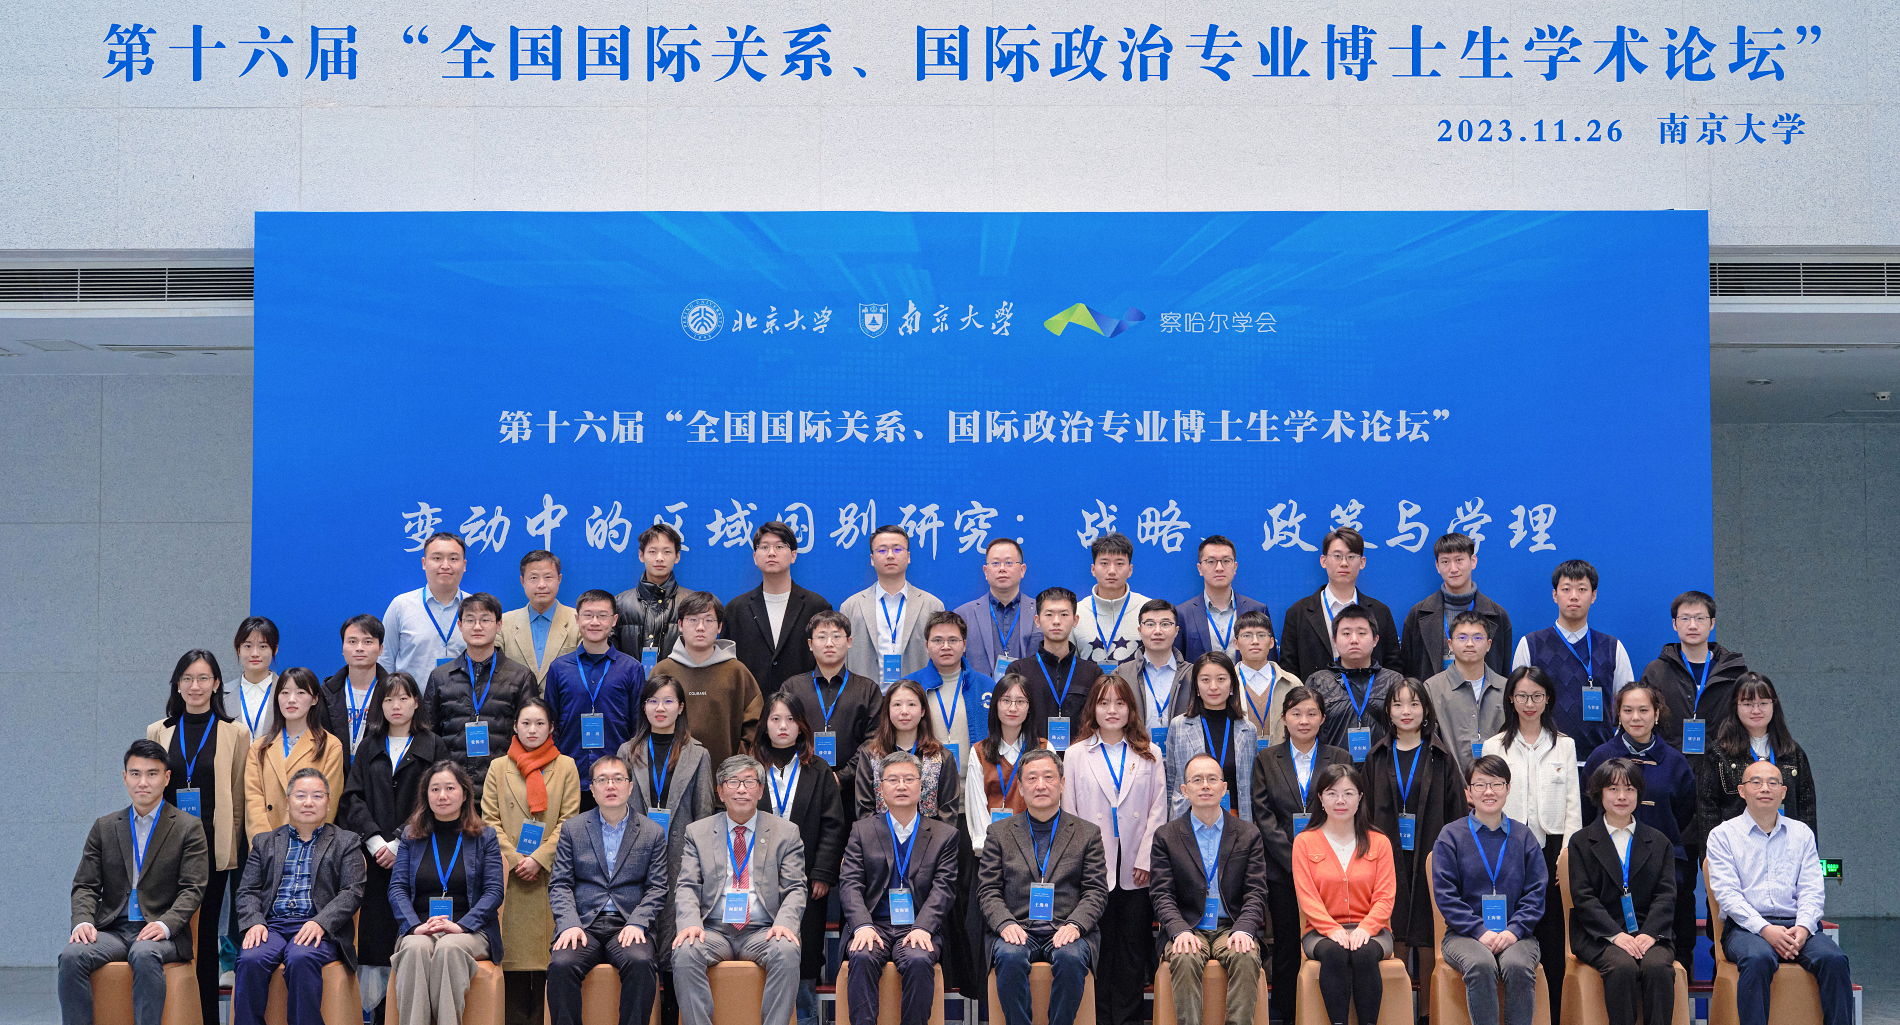 第十六届“全国国际关系、国际政治专业博士生学术论坛”在南京大学召开